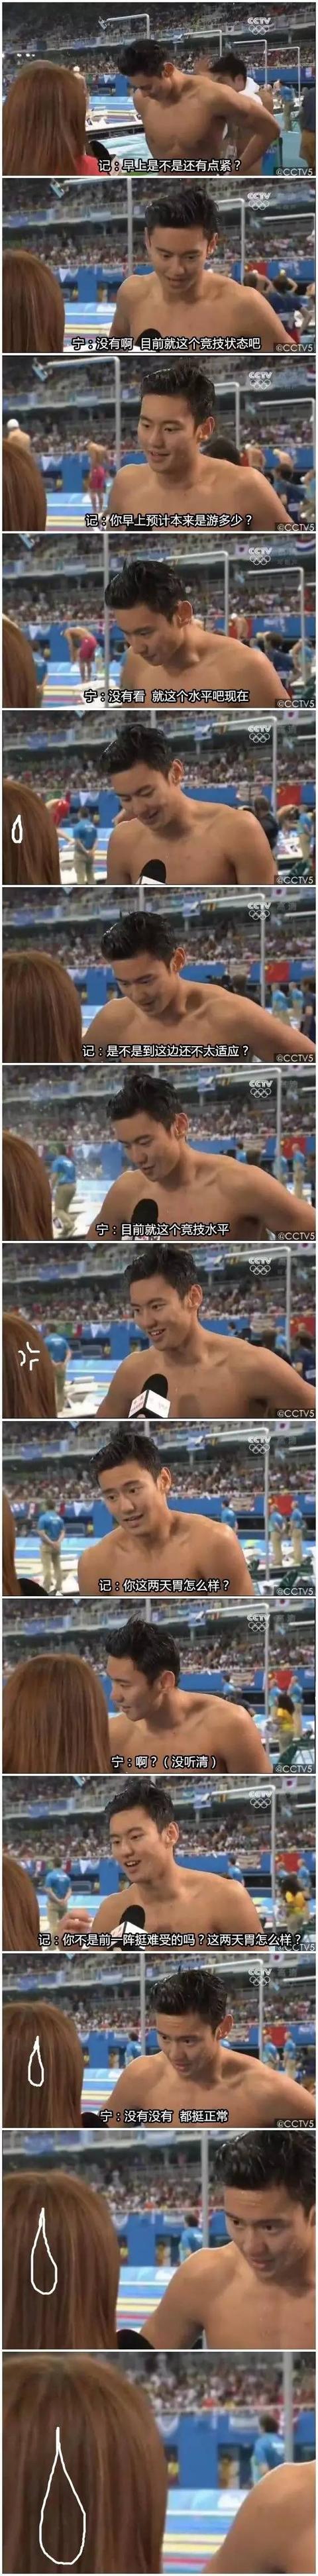 奥运中国游泳队都挺耿直，记者杯具了！